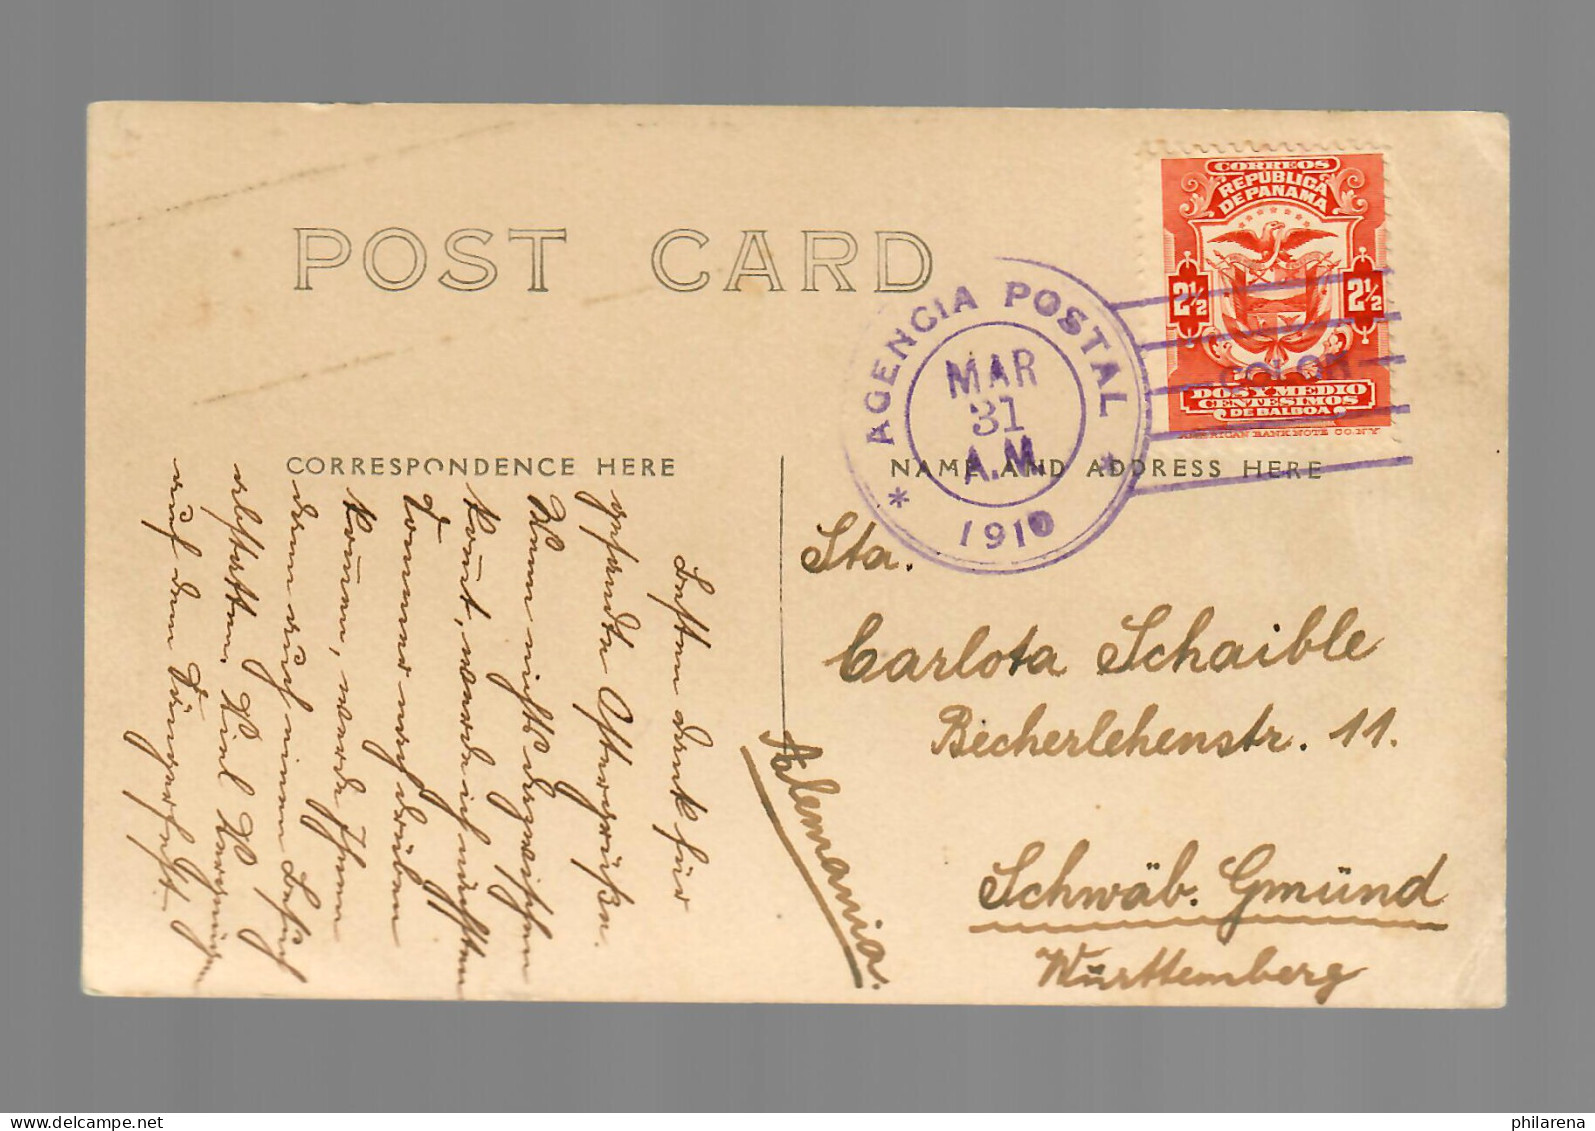 Photo Post Card 1910 Working Canal To Schwäbisch Gmünd - Panamá